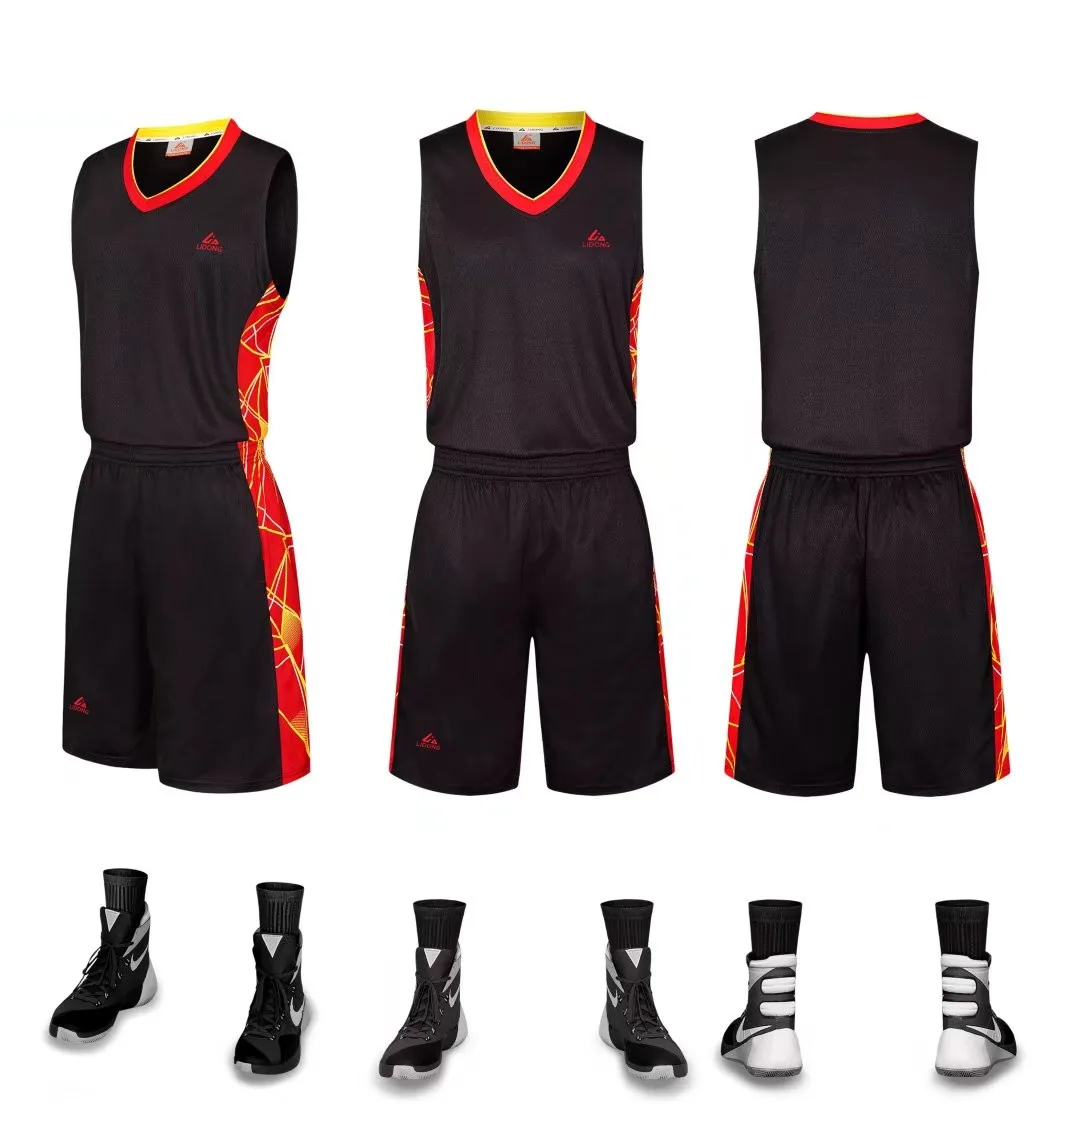 Lidong Баскетбол Майки Спортивная форма с Рубашка без рукавов и Шорты команды школа устанавливает, настройки доступны 008 - Цвет: black